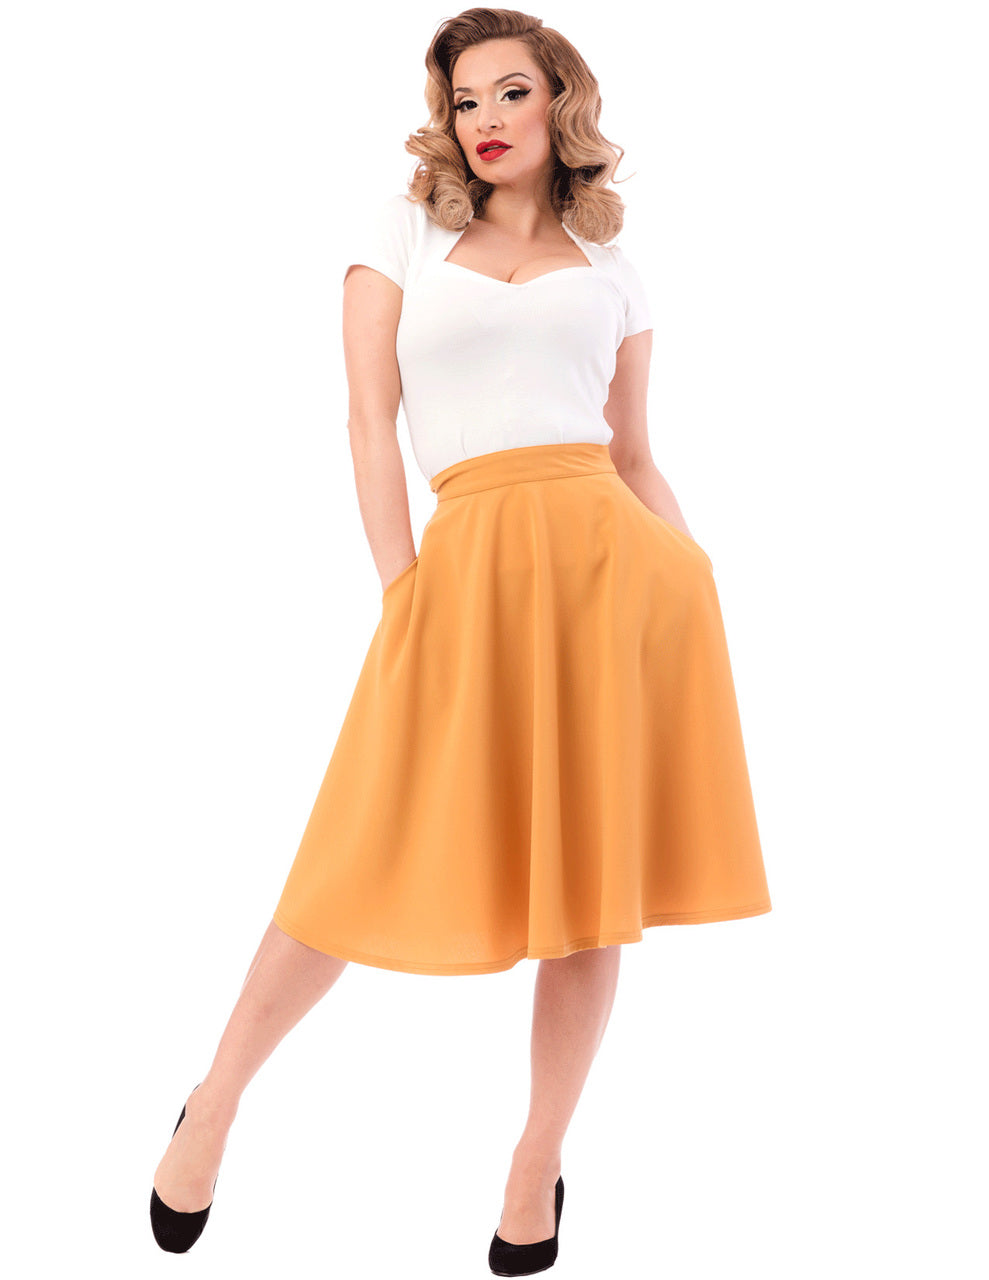 Shop Pocket High Waist Thrills Skirt in Mustard Online | Steady